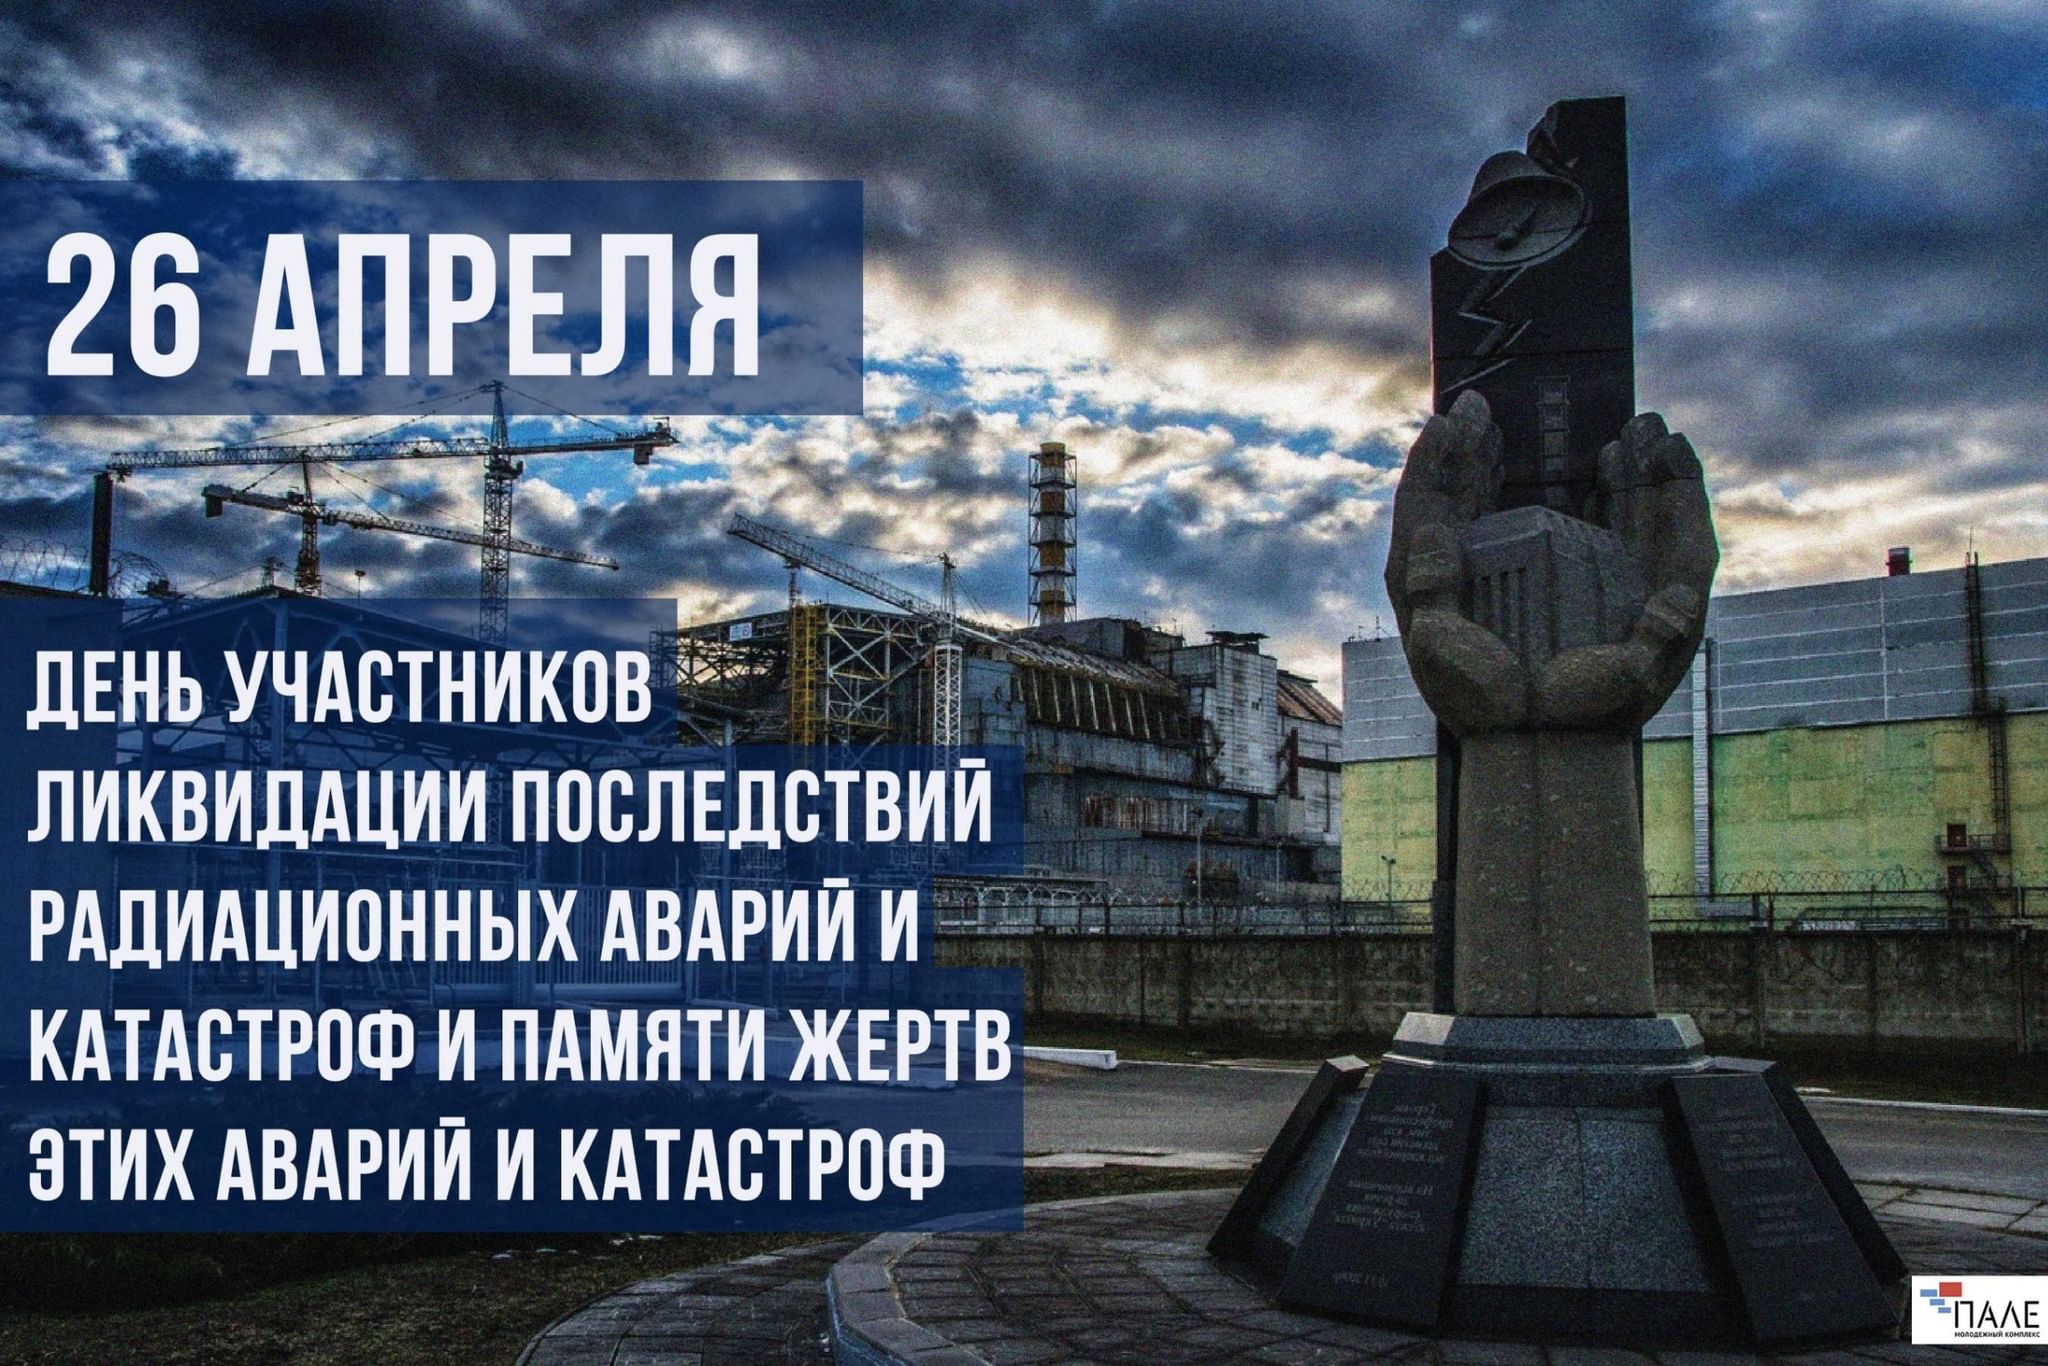 26 апреля 29 лет. 26 Апреля день памяти ликвидаторов аварии на Чернобыльской АЭС. День памяти ликвидации аварии на ЧАЭС (Чернобыль). 26 Апреля день памяти погибших в радиационных авариях и катастрофах. 26 Апреля – день участников ликвидации аварии на ЧАЭС.